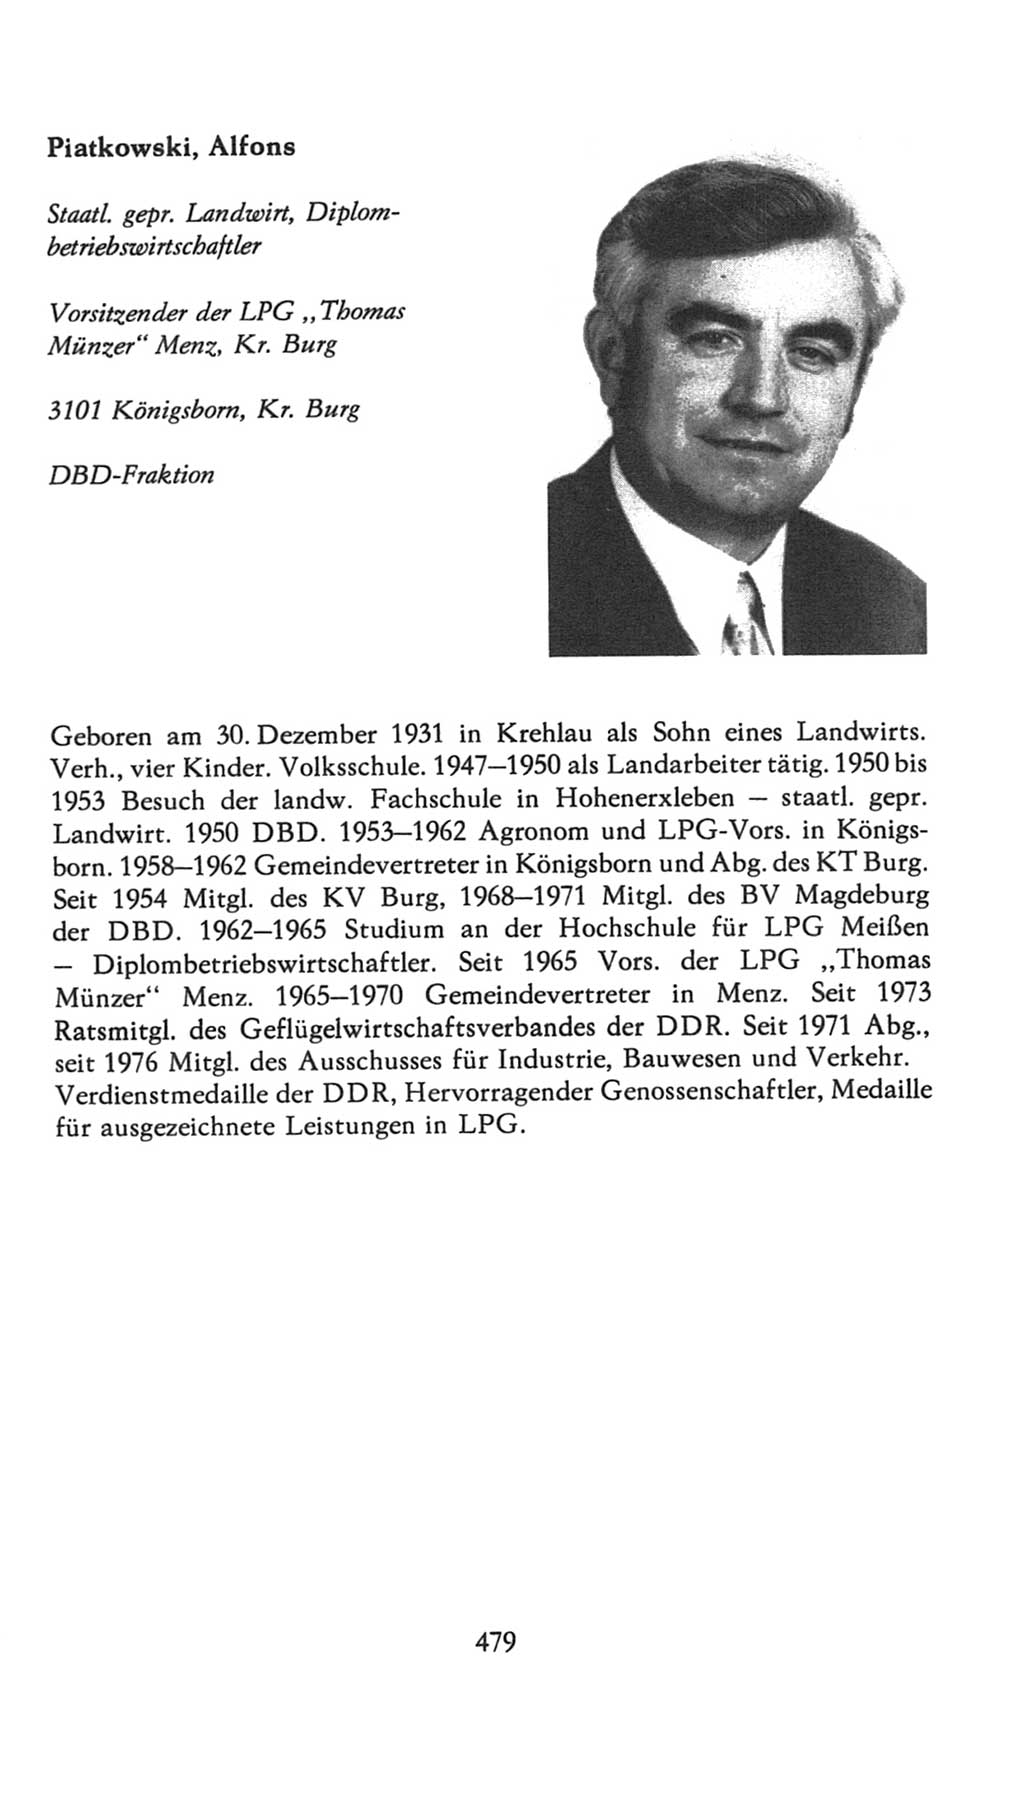 Volkskammer (VK) der Deutschen Demokratischen Republik (DDR), 7. Wahlperiode 1976-1981, Seite 479 (VK. DDR 7. WP. 1976-1981, S. 479)